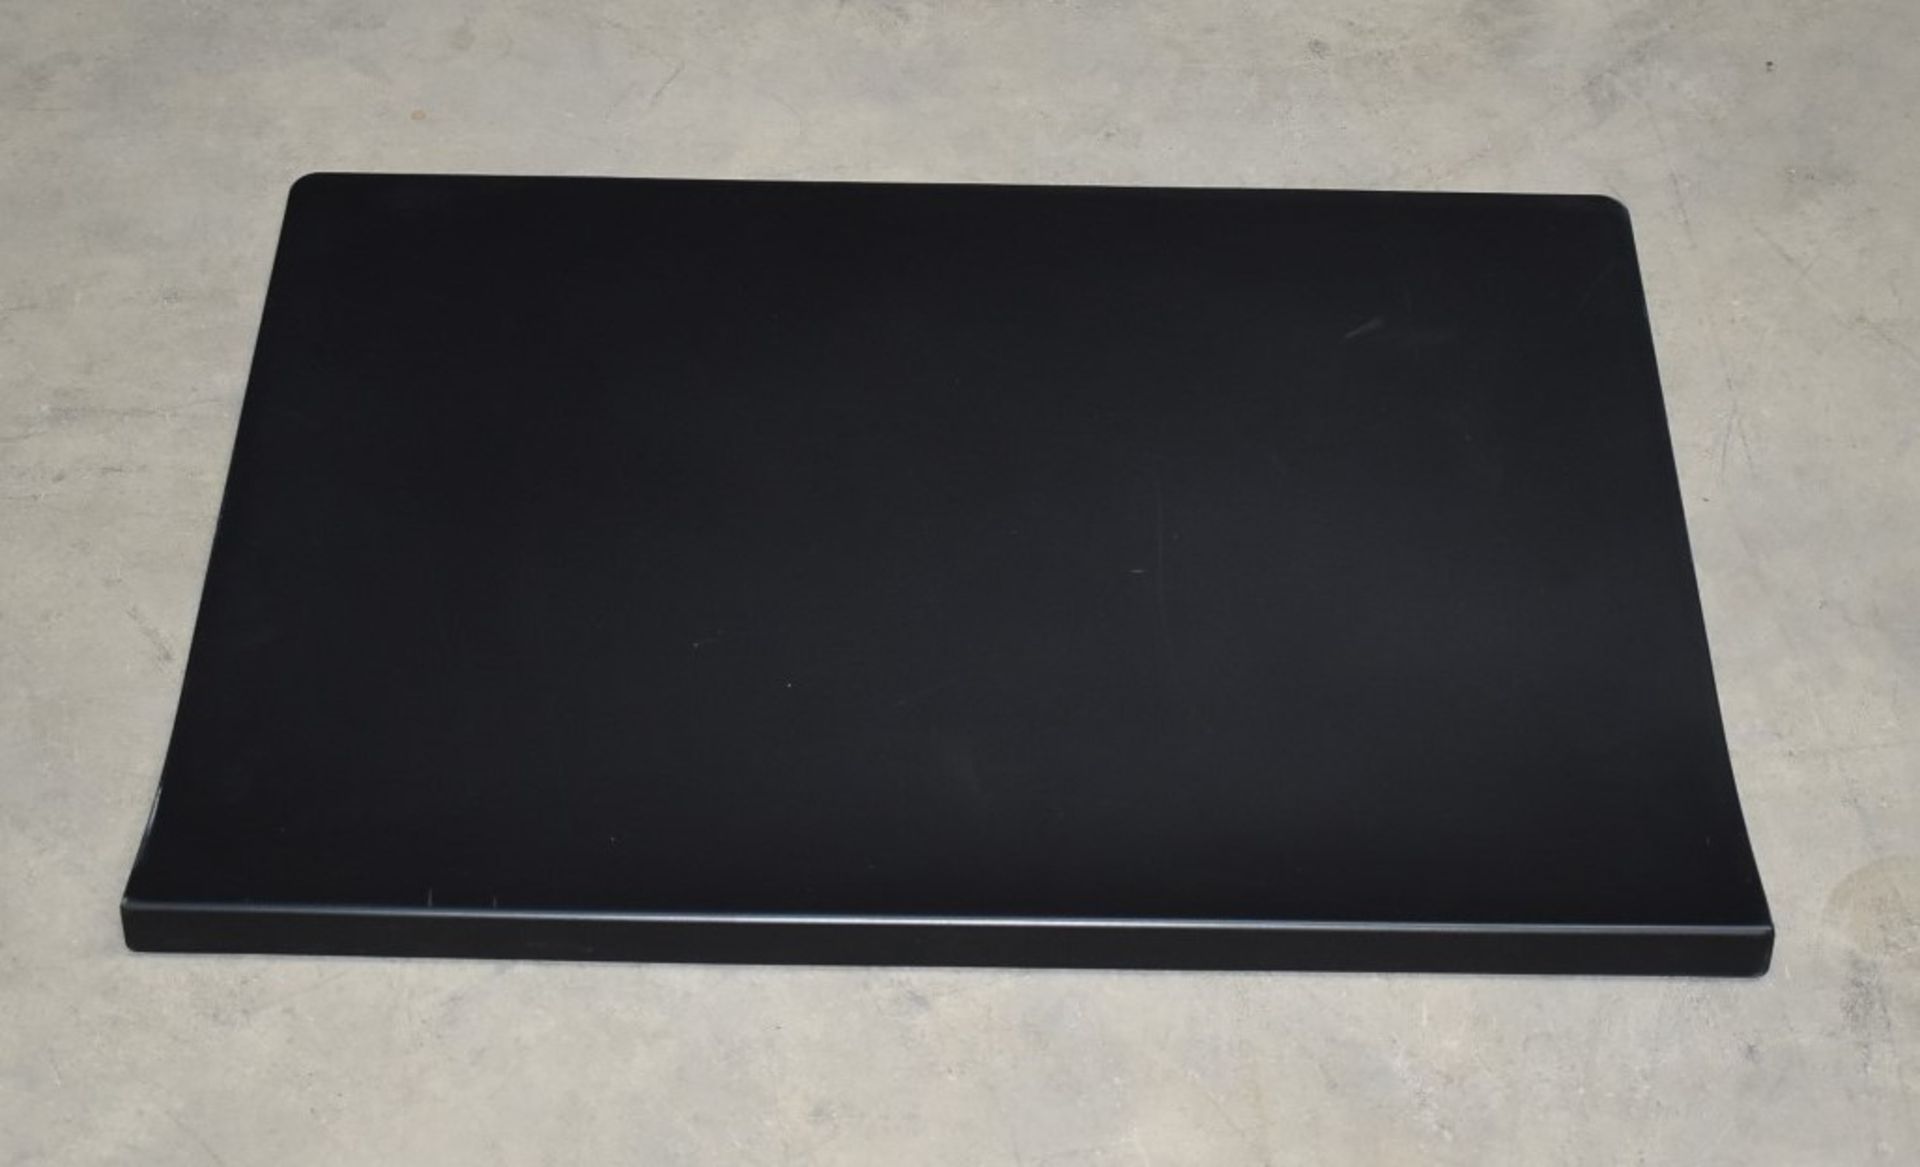 1 x Vitra Joyn Desk Pad in Black - Designed by Ronan & Erwan Bouroullec - Size: 70 x 50 cms - RRP £ - Image 7 of 7